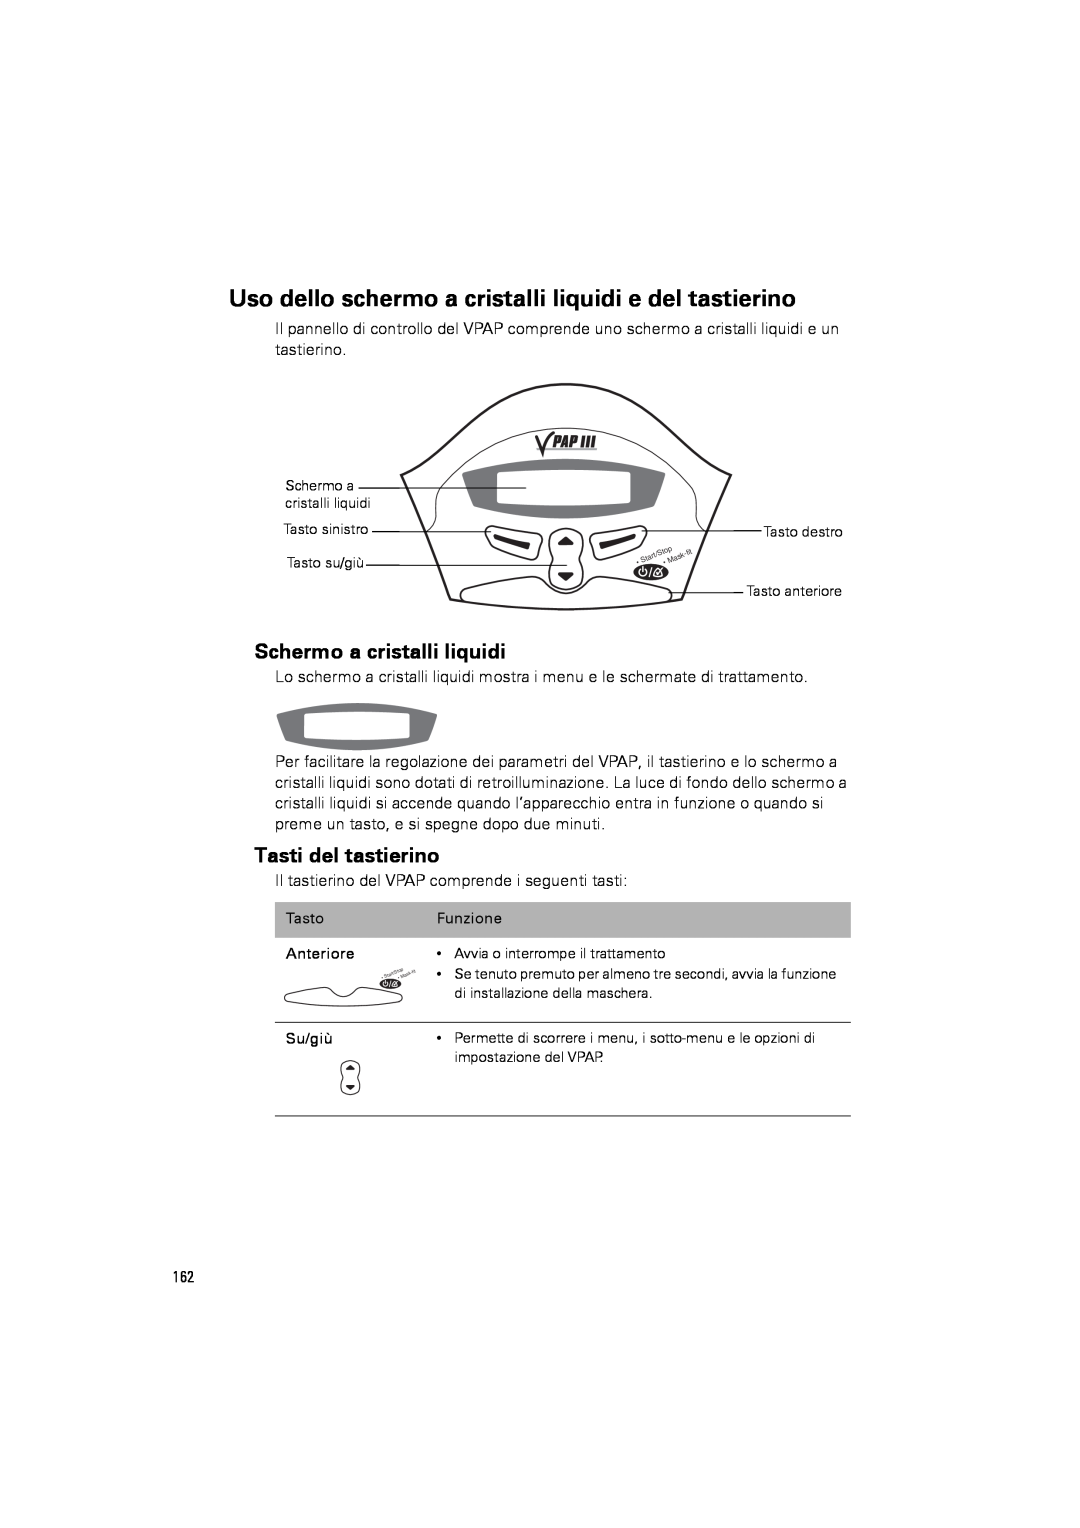 ResMed III & III ST user manual Schermo a cristalli liquidi, Tasti del tastierino 